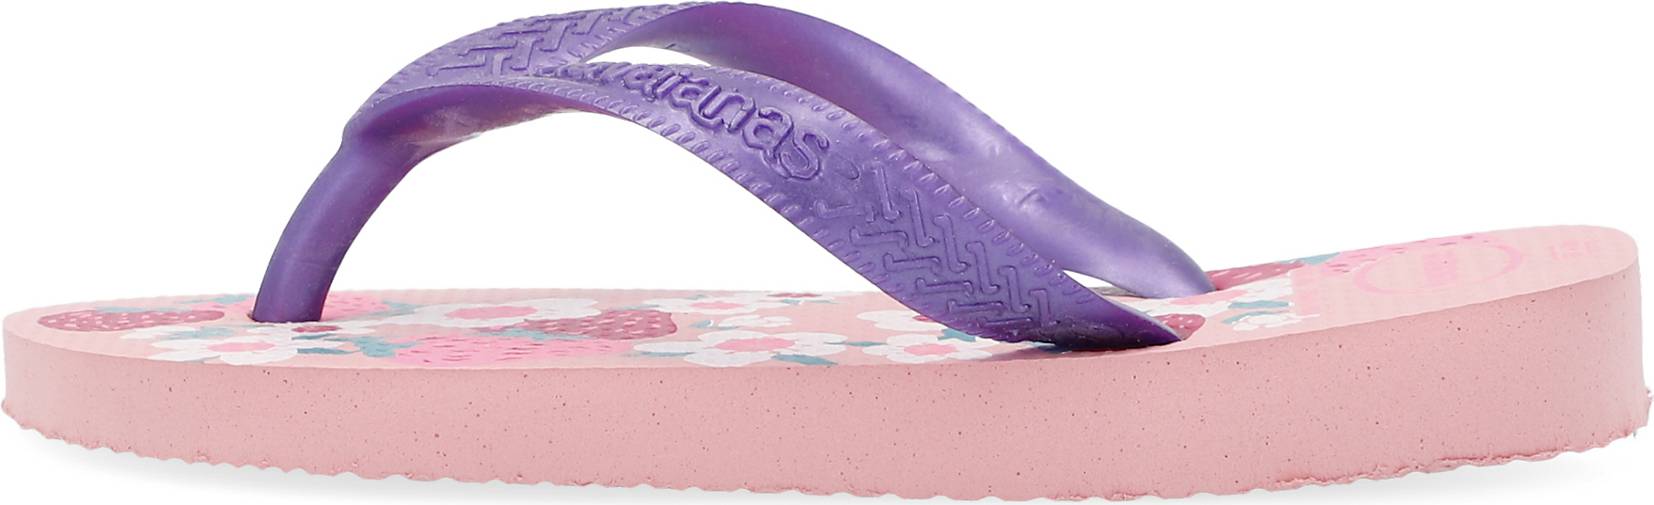 Havaianas Gummi Zehentrenner in Pink Damen Schuhe Flache Schuhe Zehentrenner und Badelatschen 